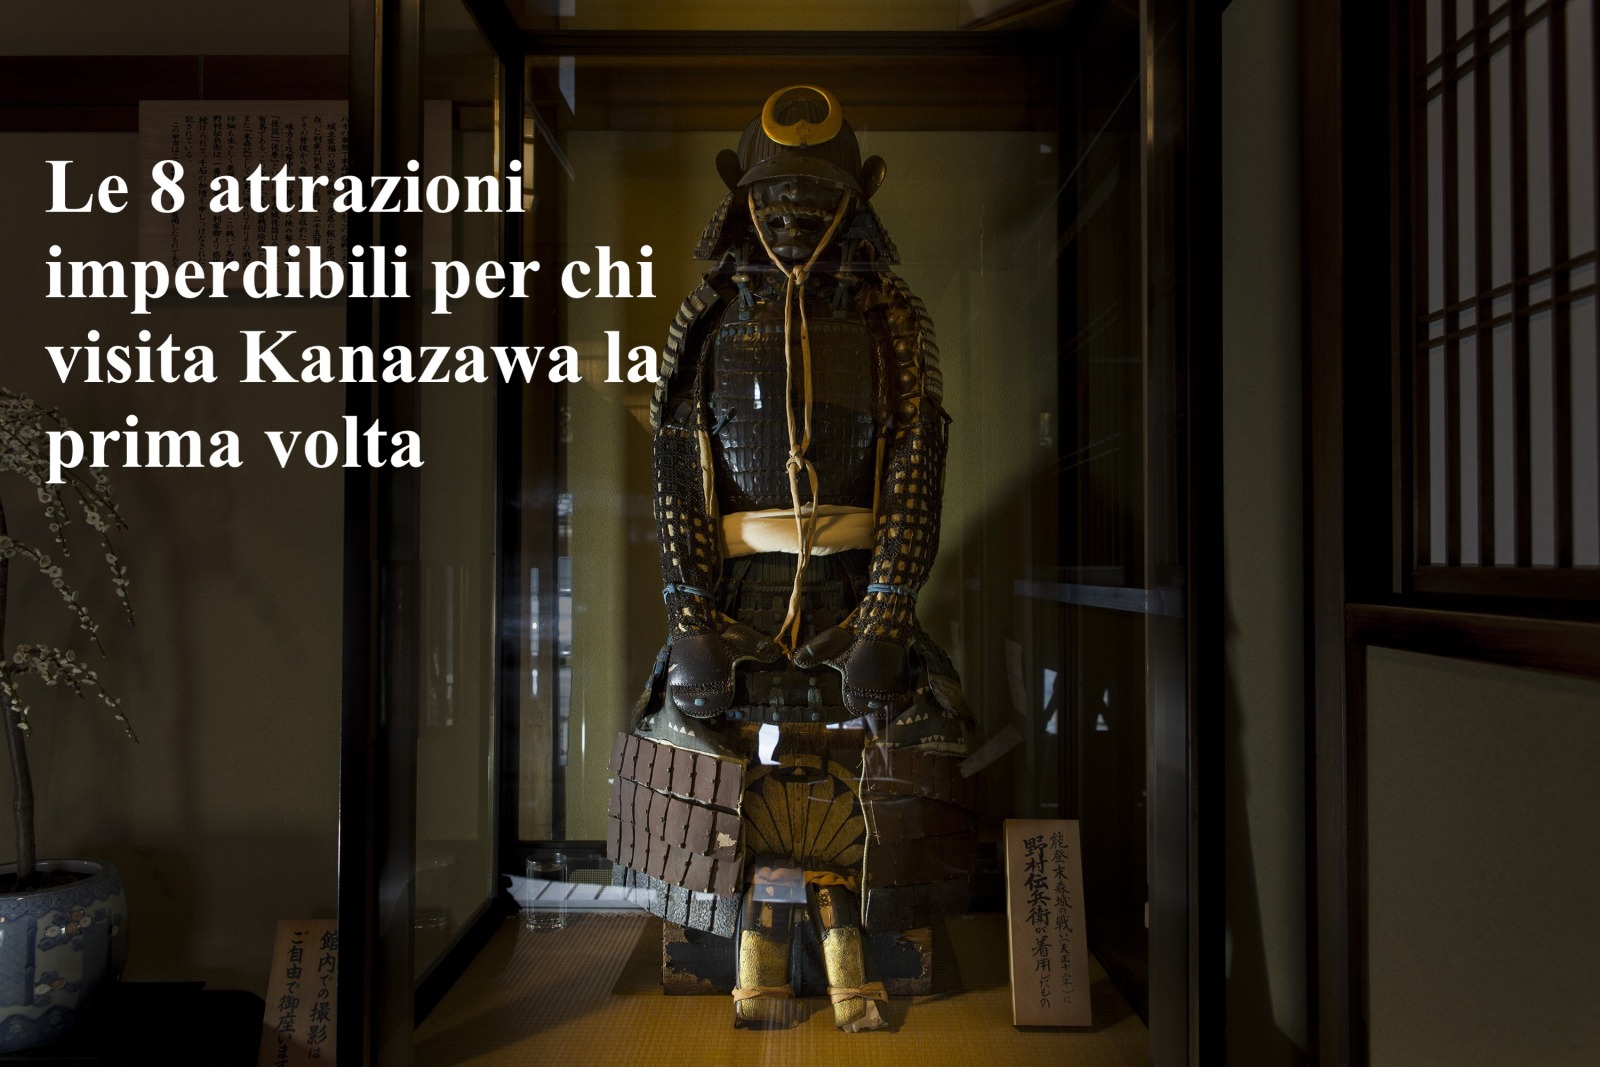 Le 8 attrazioni imperdibili per chi visita Kanazawa la prima volta